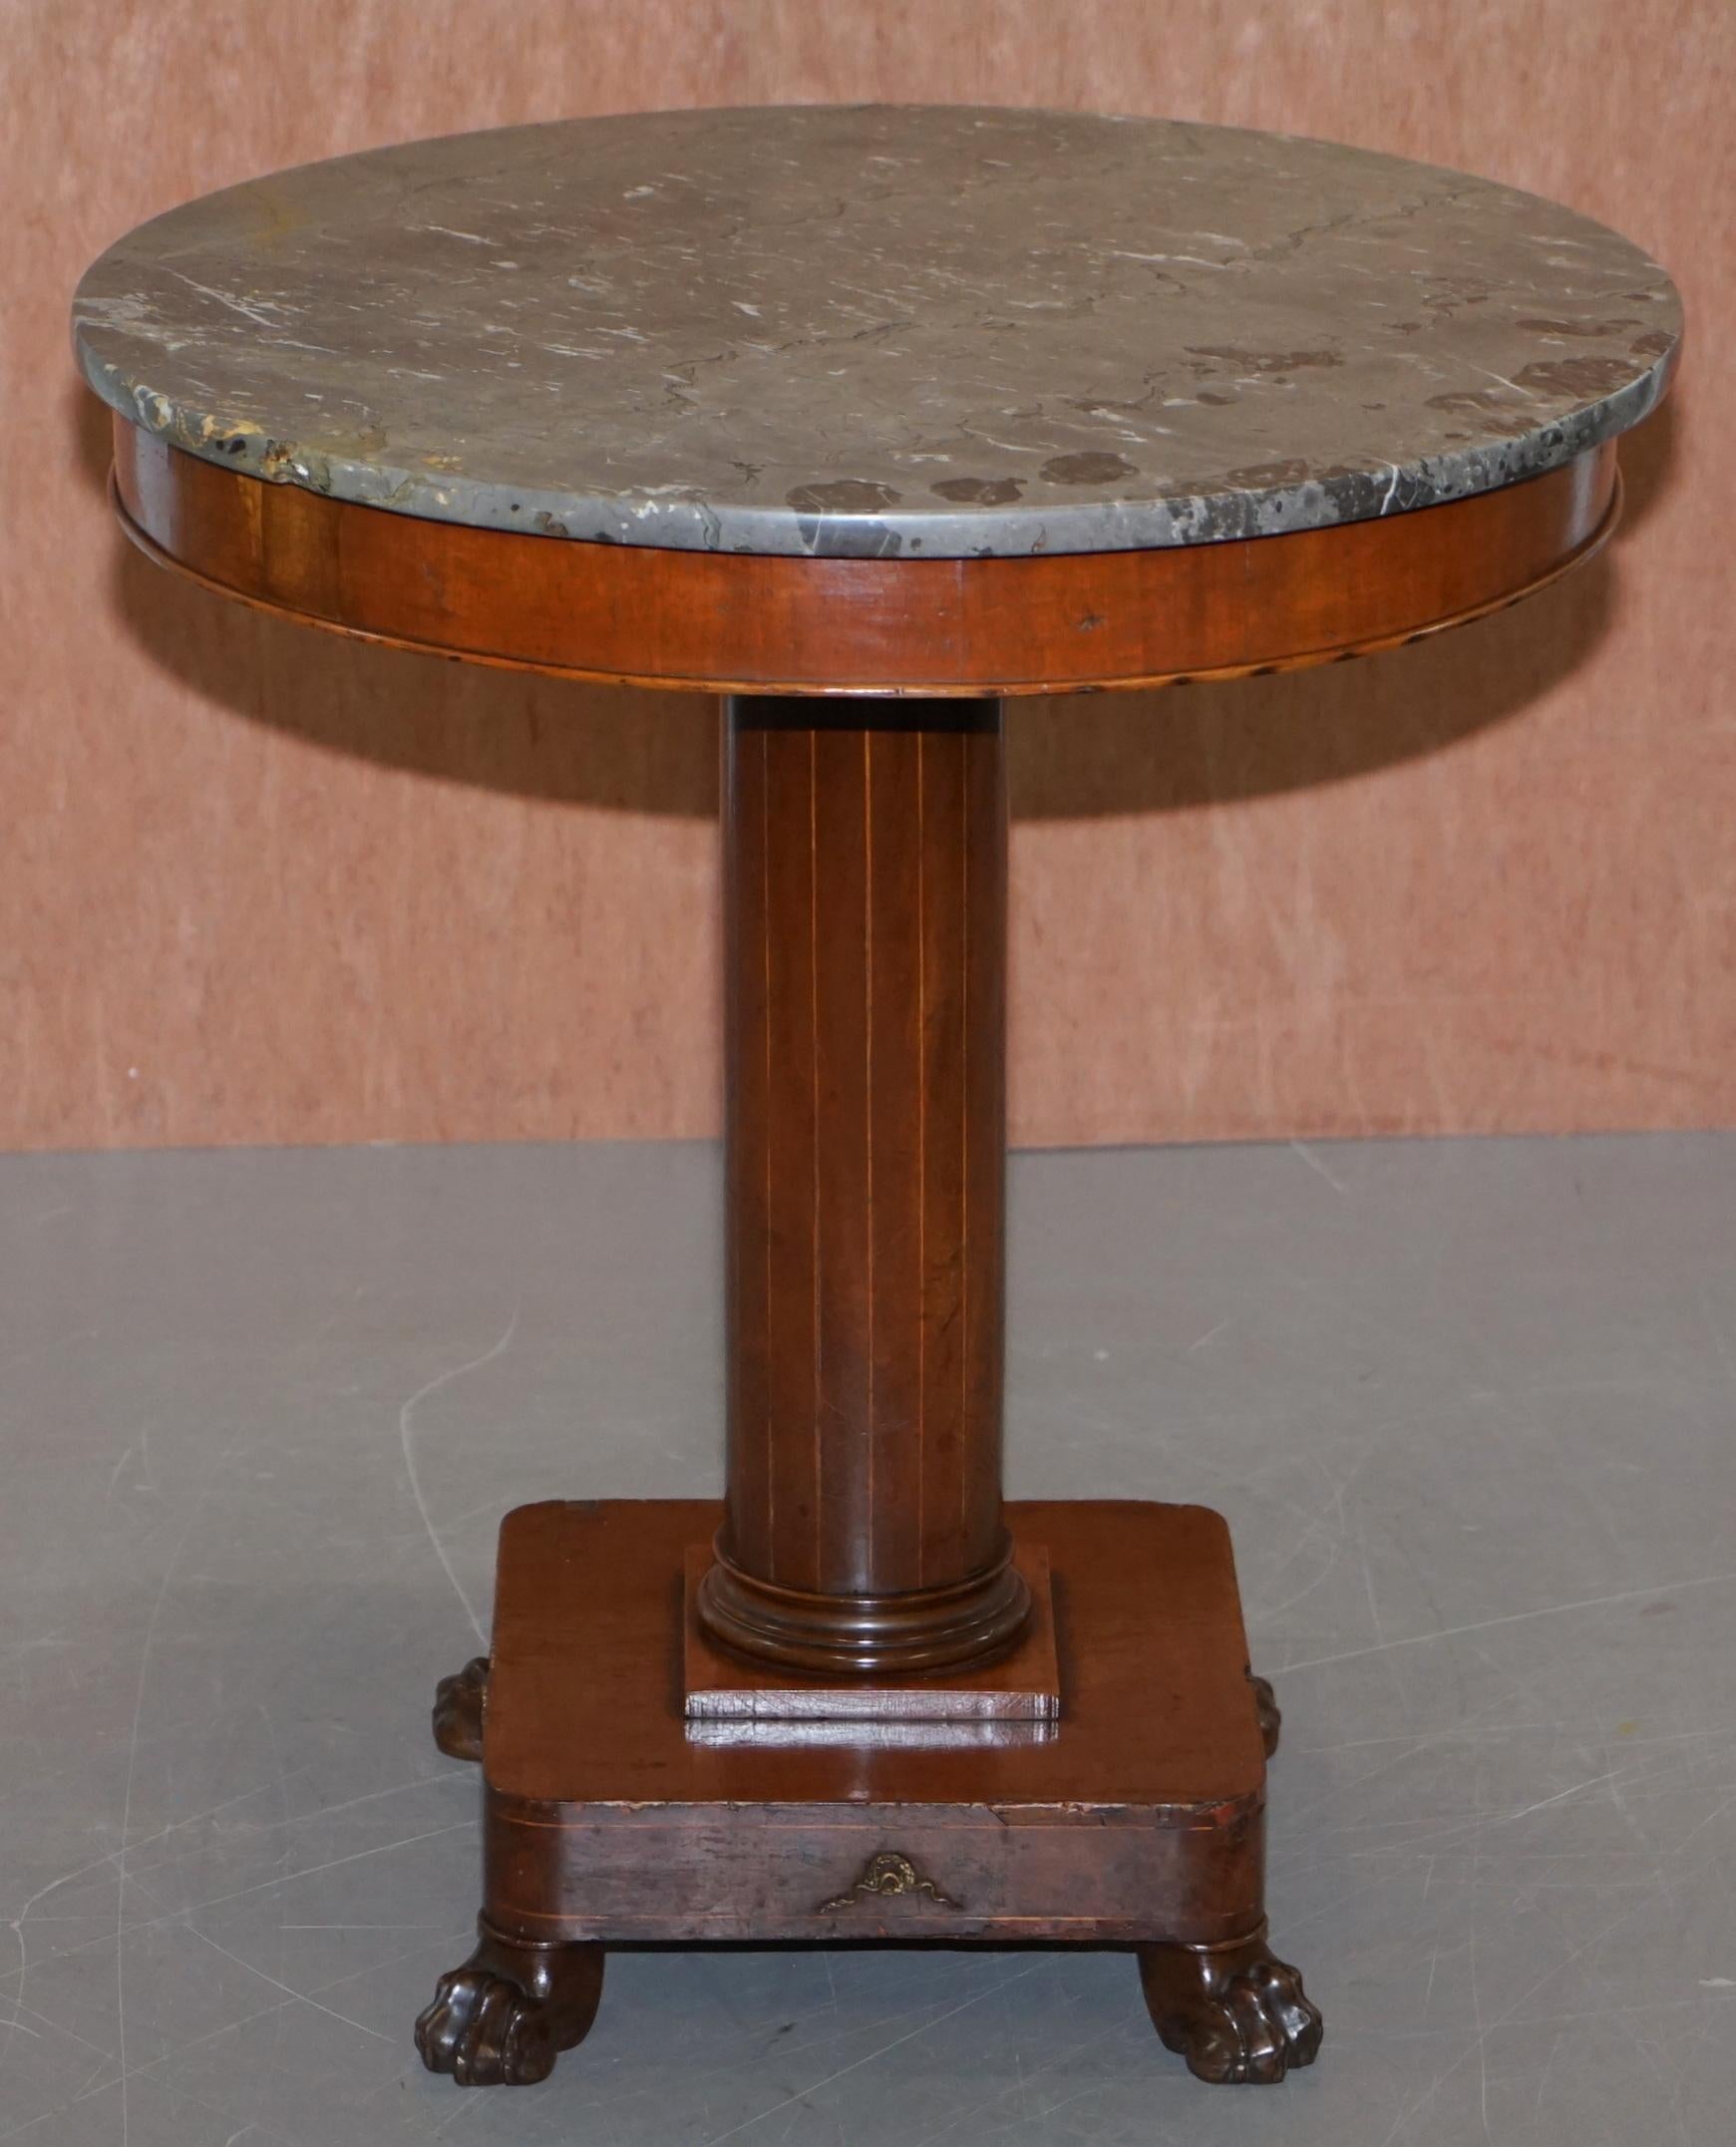 Nous avons le plaisir de proposer à la vente cette belle table d'appoint de style Empire Napoléon III, fabriquée à la main en France vers 1850.

Une pièce de belle apparence et extrêmement bien faite. Le plateau en marbre est gris, c'est la pierre